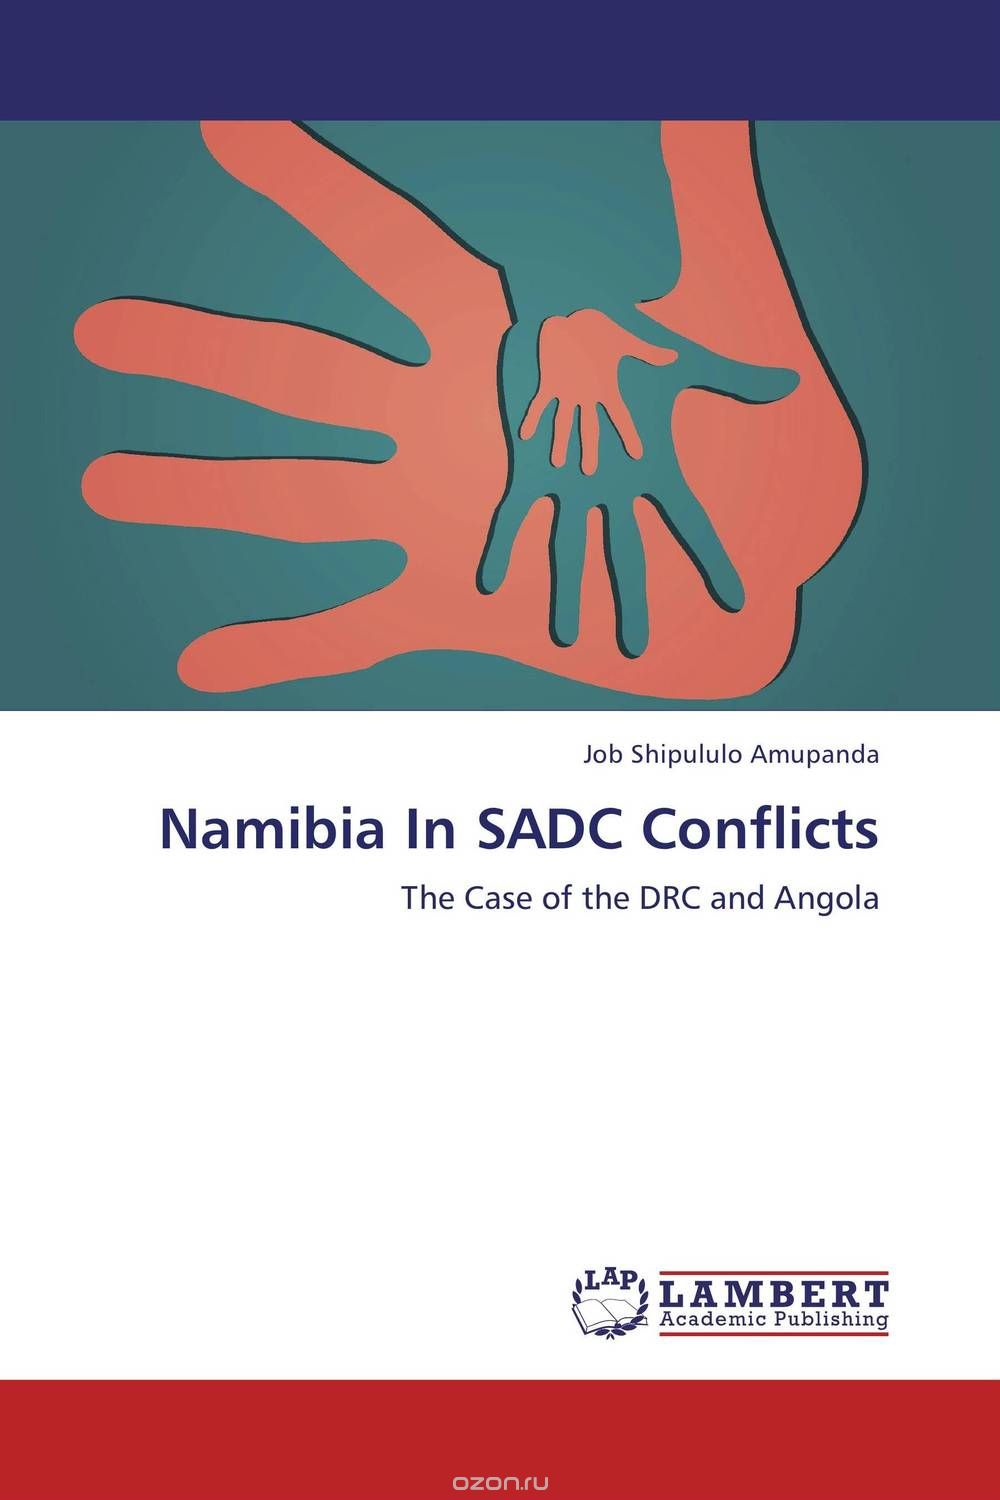 Скачать книгу "Namibia In SADC Conflicts"